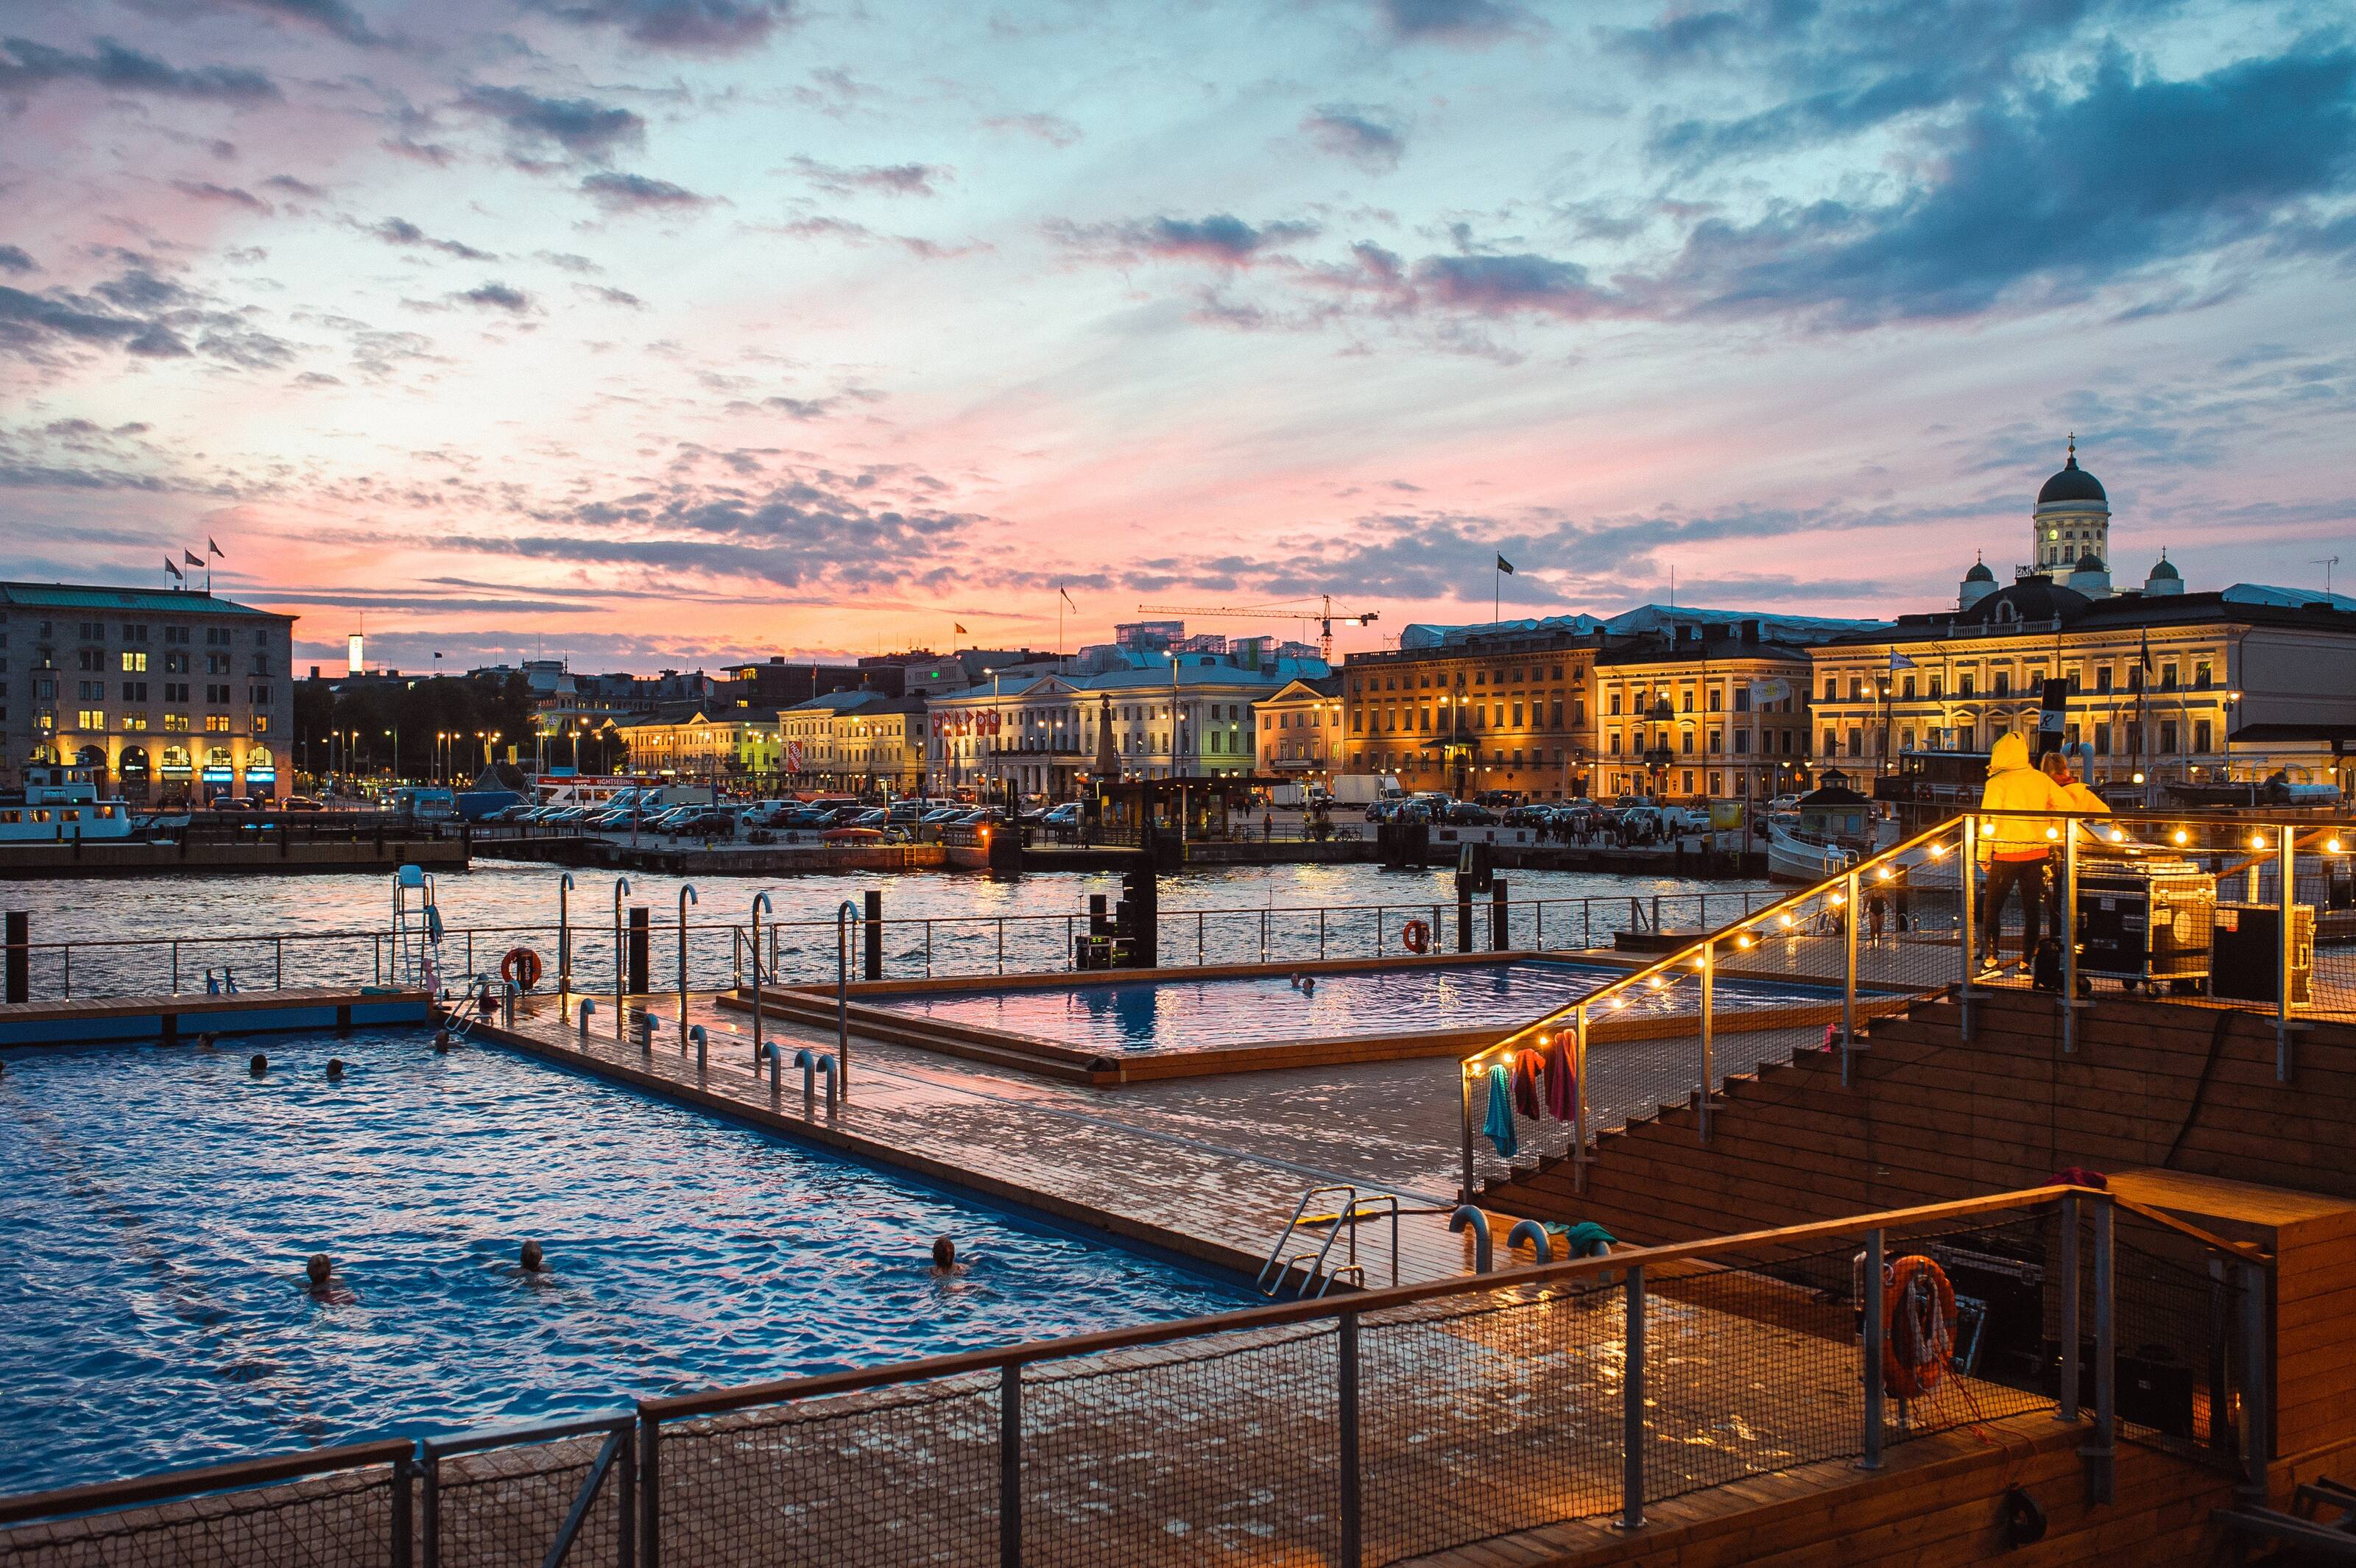 Der Allas Sea Pool befindet sich in der Nähe des Marktplatzes von Helsinki